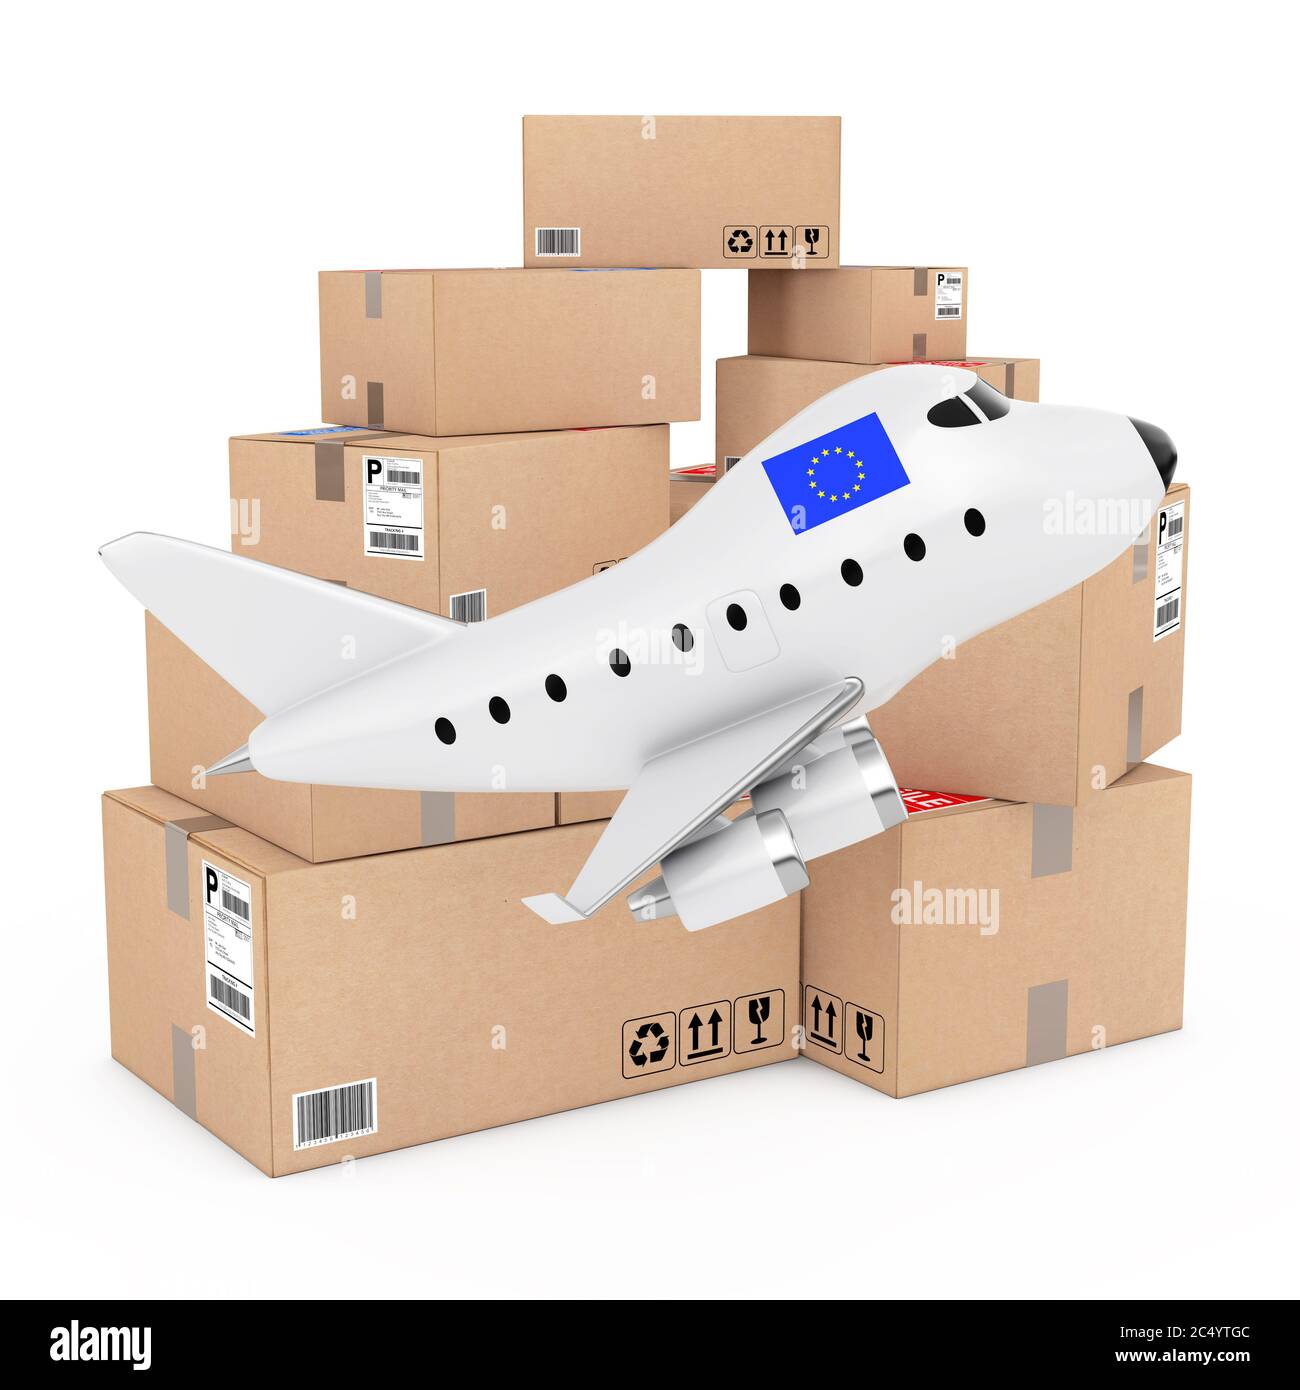 Air Cargo Konzept. Cartoon Spielzeug Jet Flugzeug mit Europischen Union Flagge in der Nähe von Kartons von Waren auf weißem Hintergrund. 3d-Rendering. Stockfoto